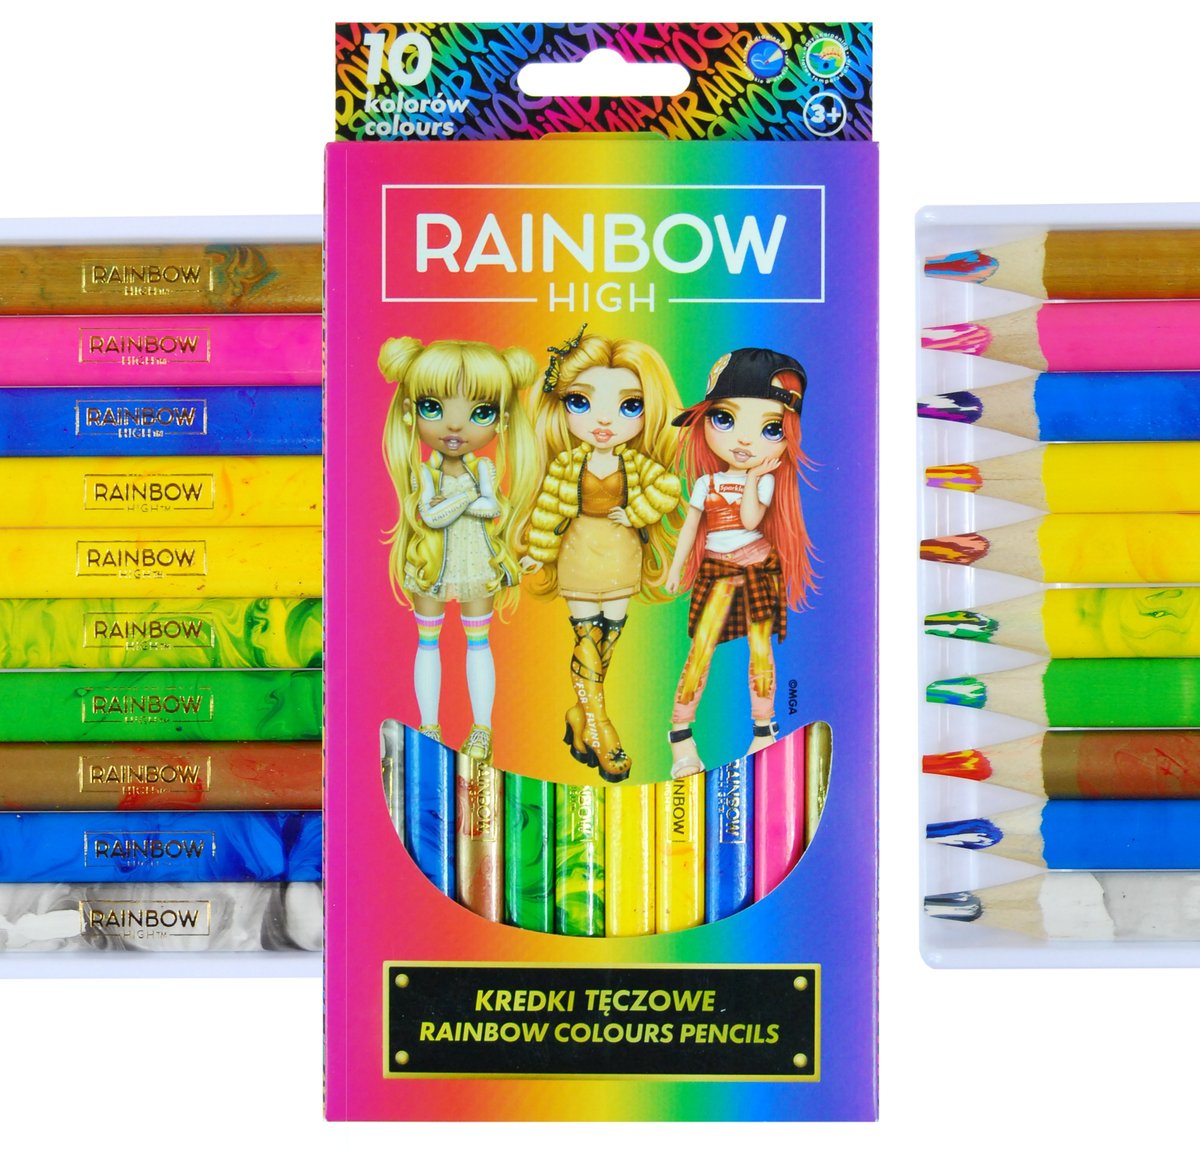 Zdjęcia - Rysowanie Astra Kredki Tęczowe Jumbo 10 Kolorów Rainbow High 